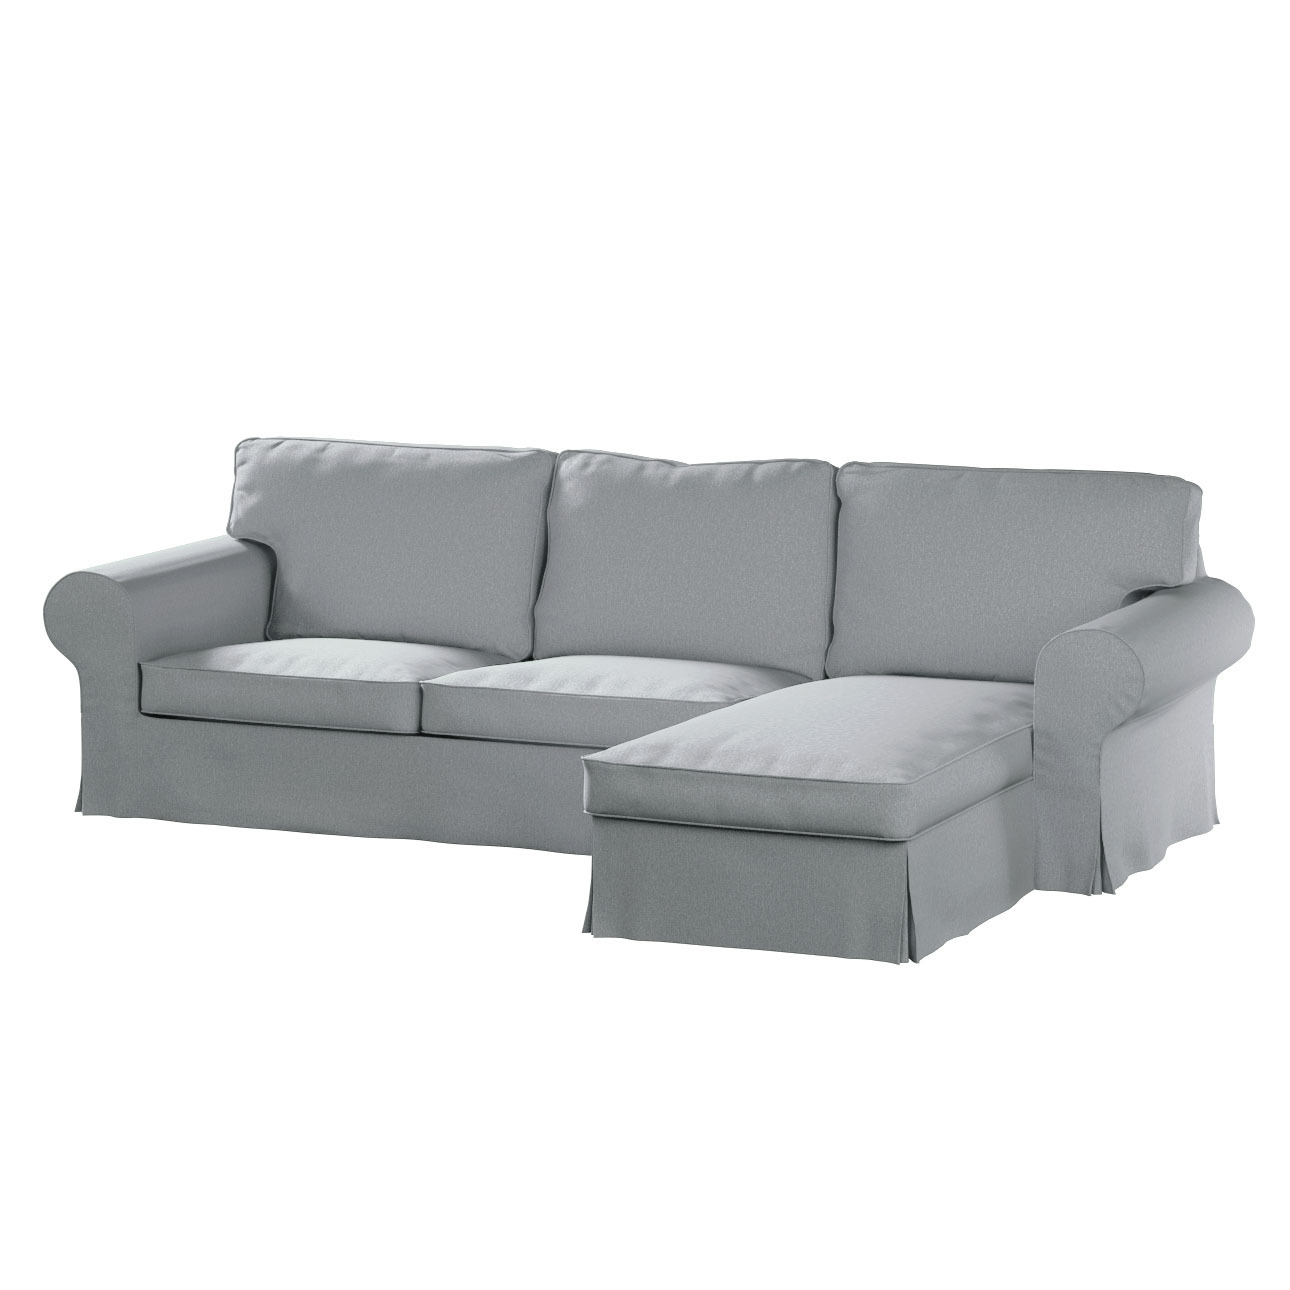 Bezug für Ektorp 2-Sitzer Sofa mit Recamiere, grau, Ektorp 2-Sitzer Sofabez günstig online kaufen